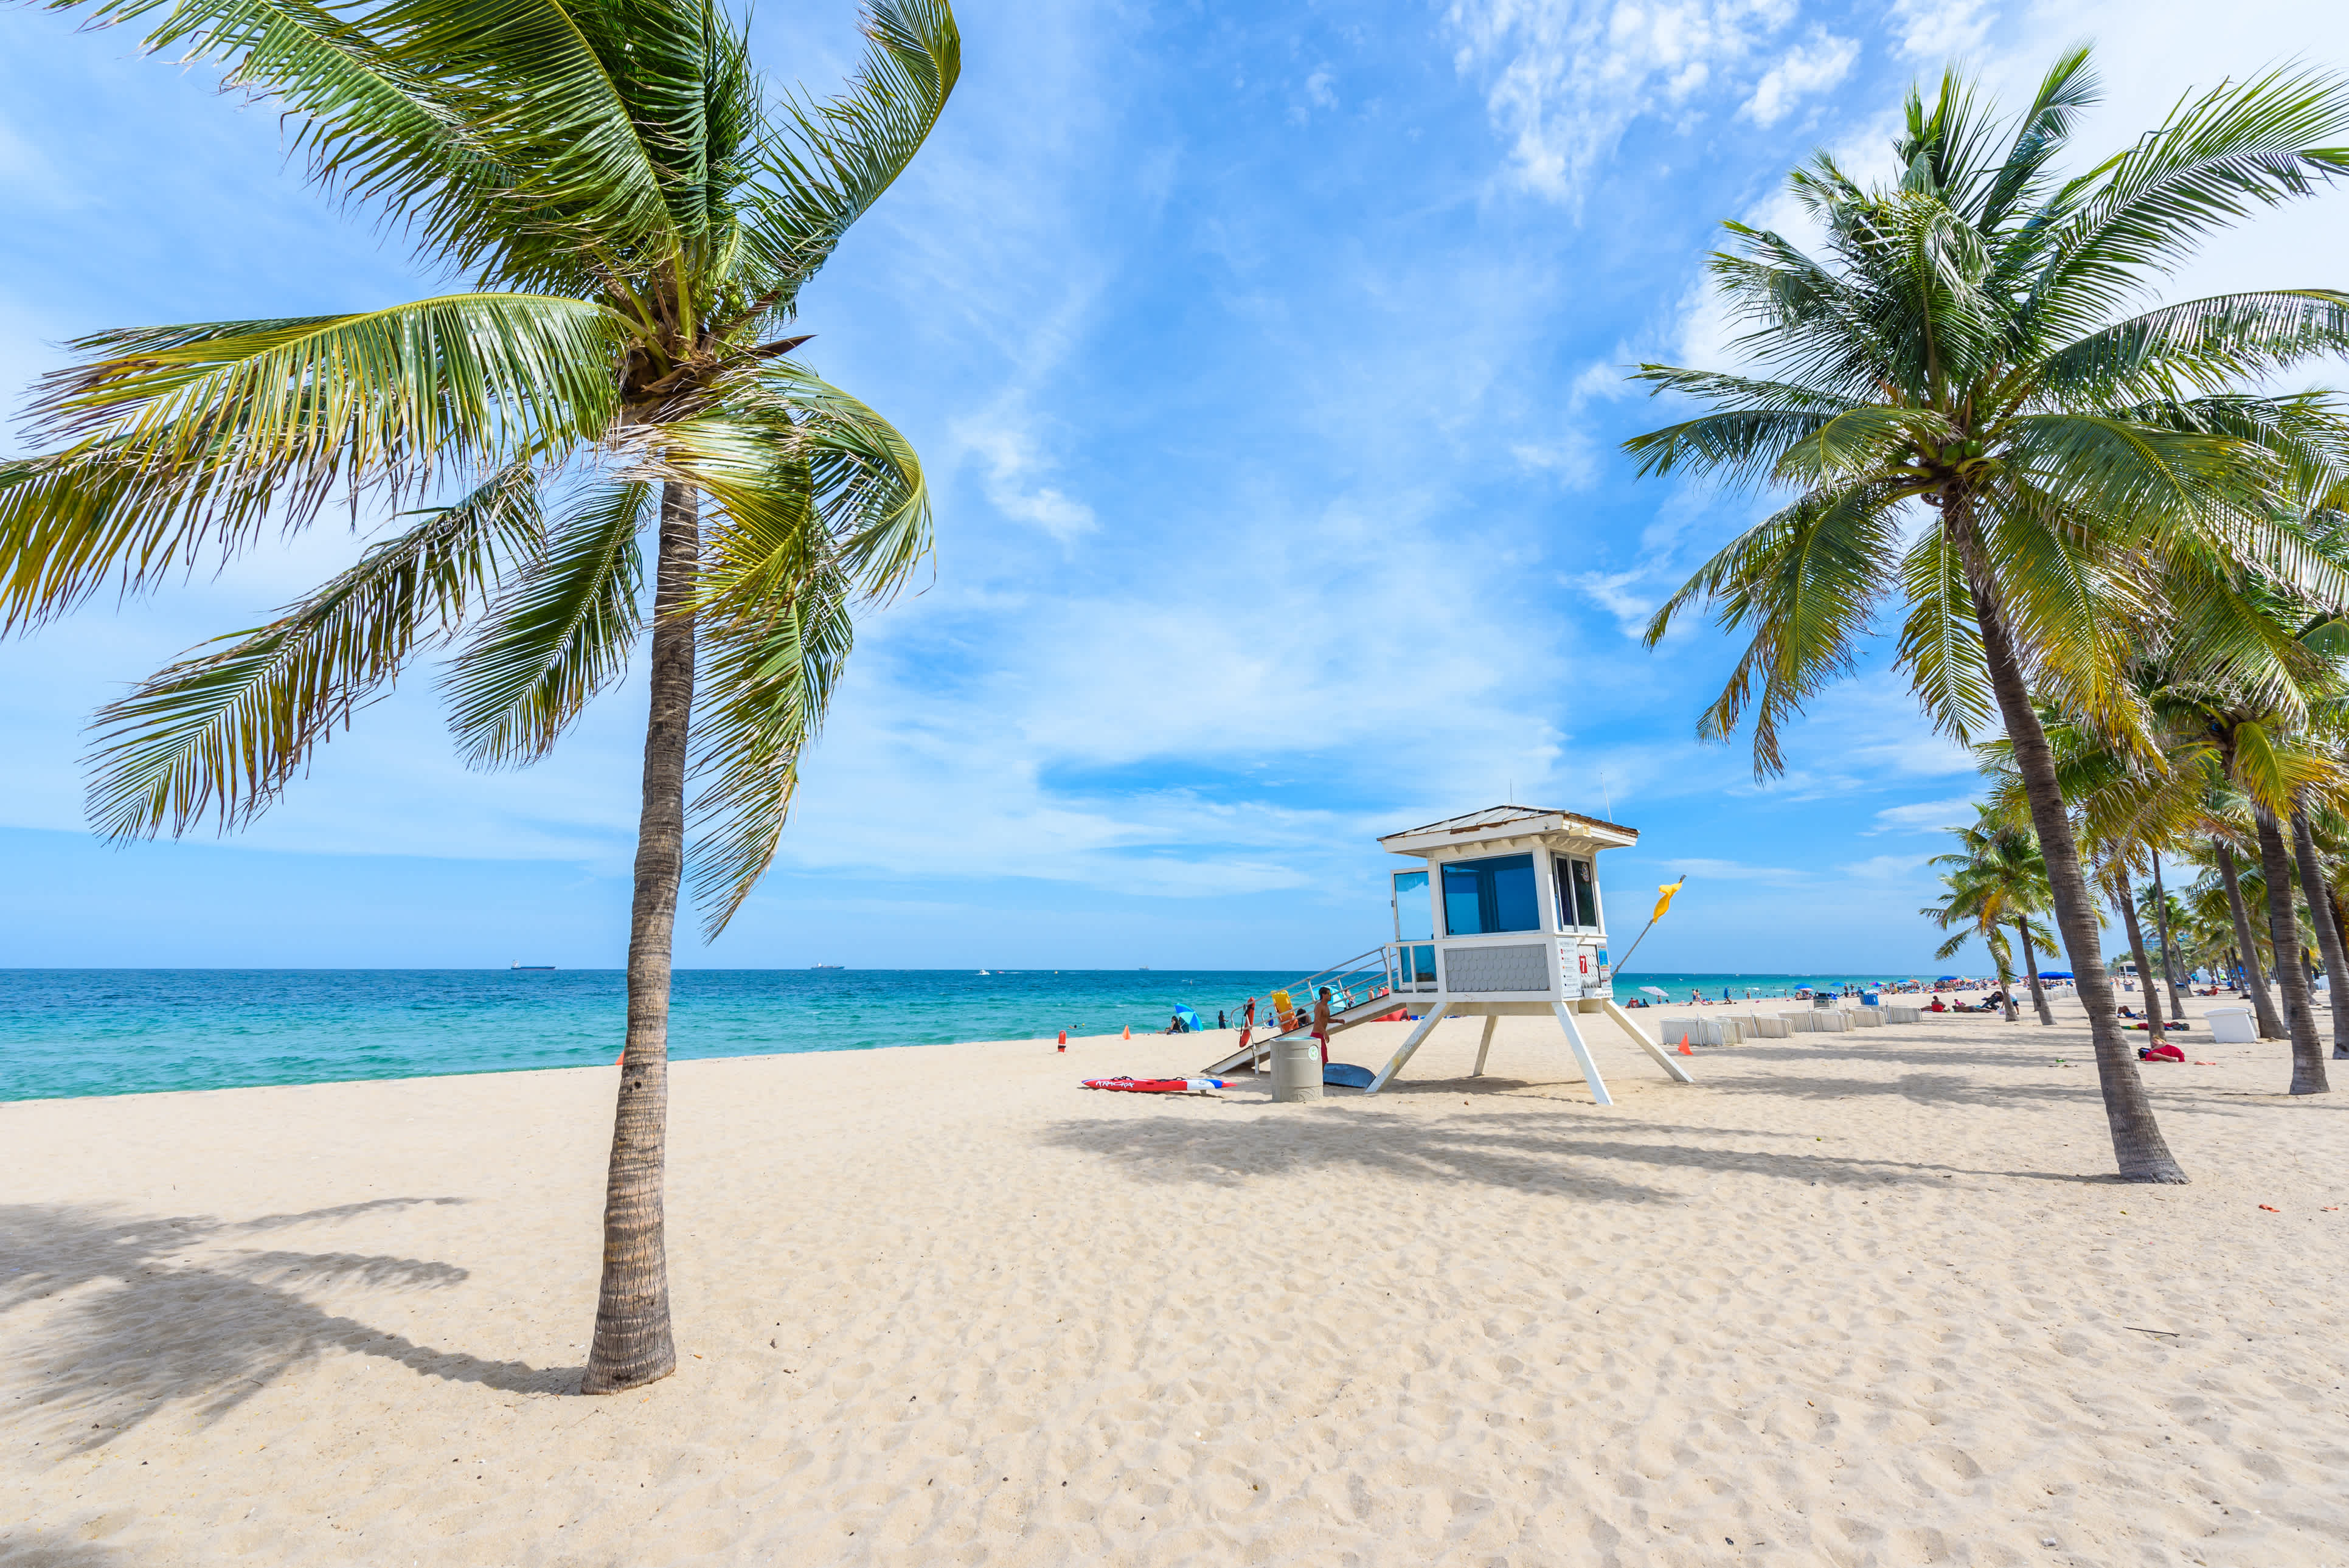 Visitez et détendez-vous sur la plage de Fort Lauderdale pendant votre voyage en Floride.